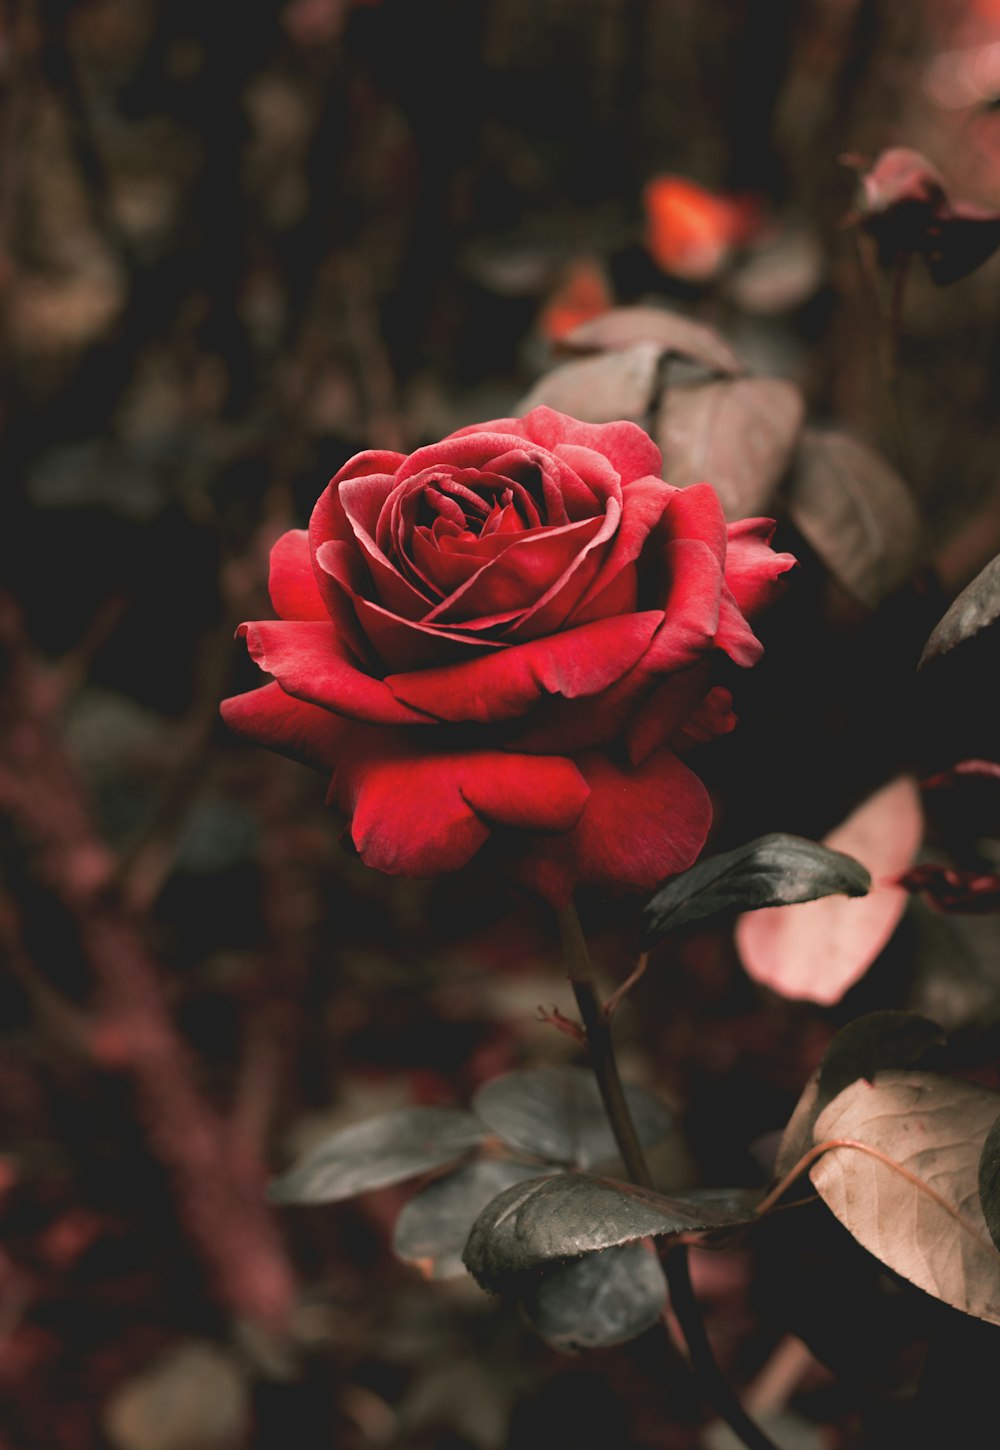 Photographie à mise au point peu profonde de fleur rouge